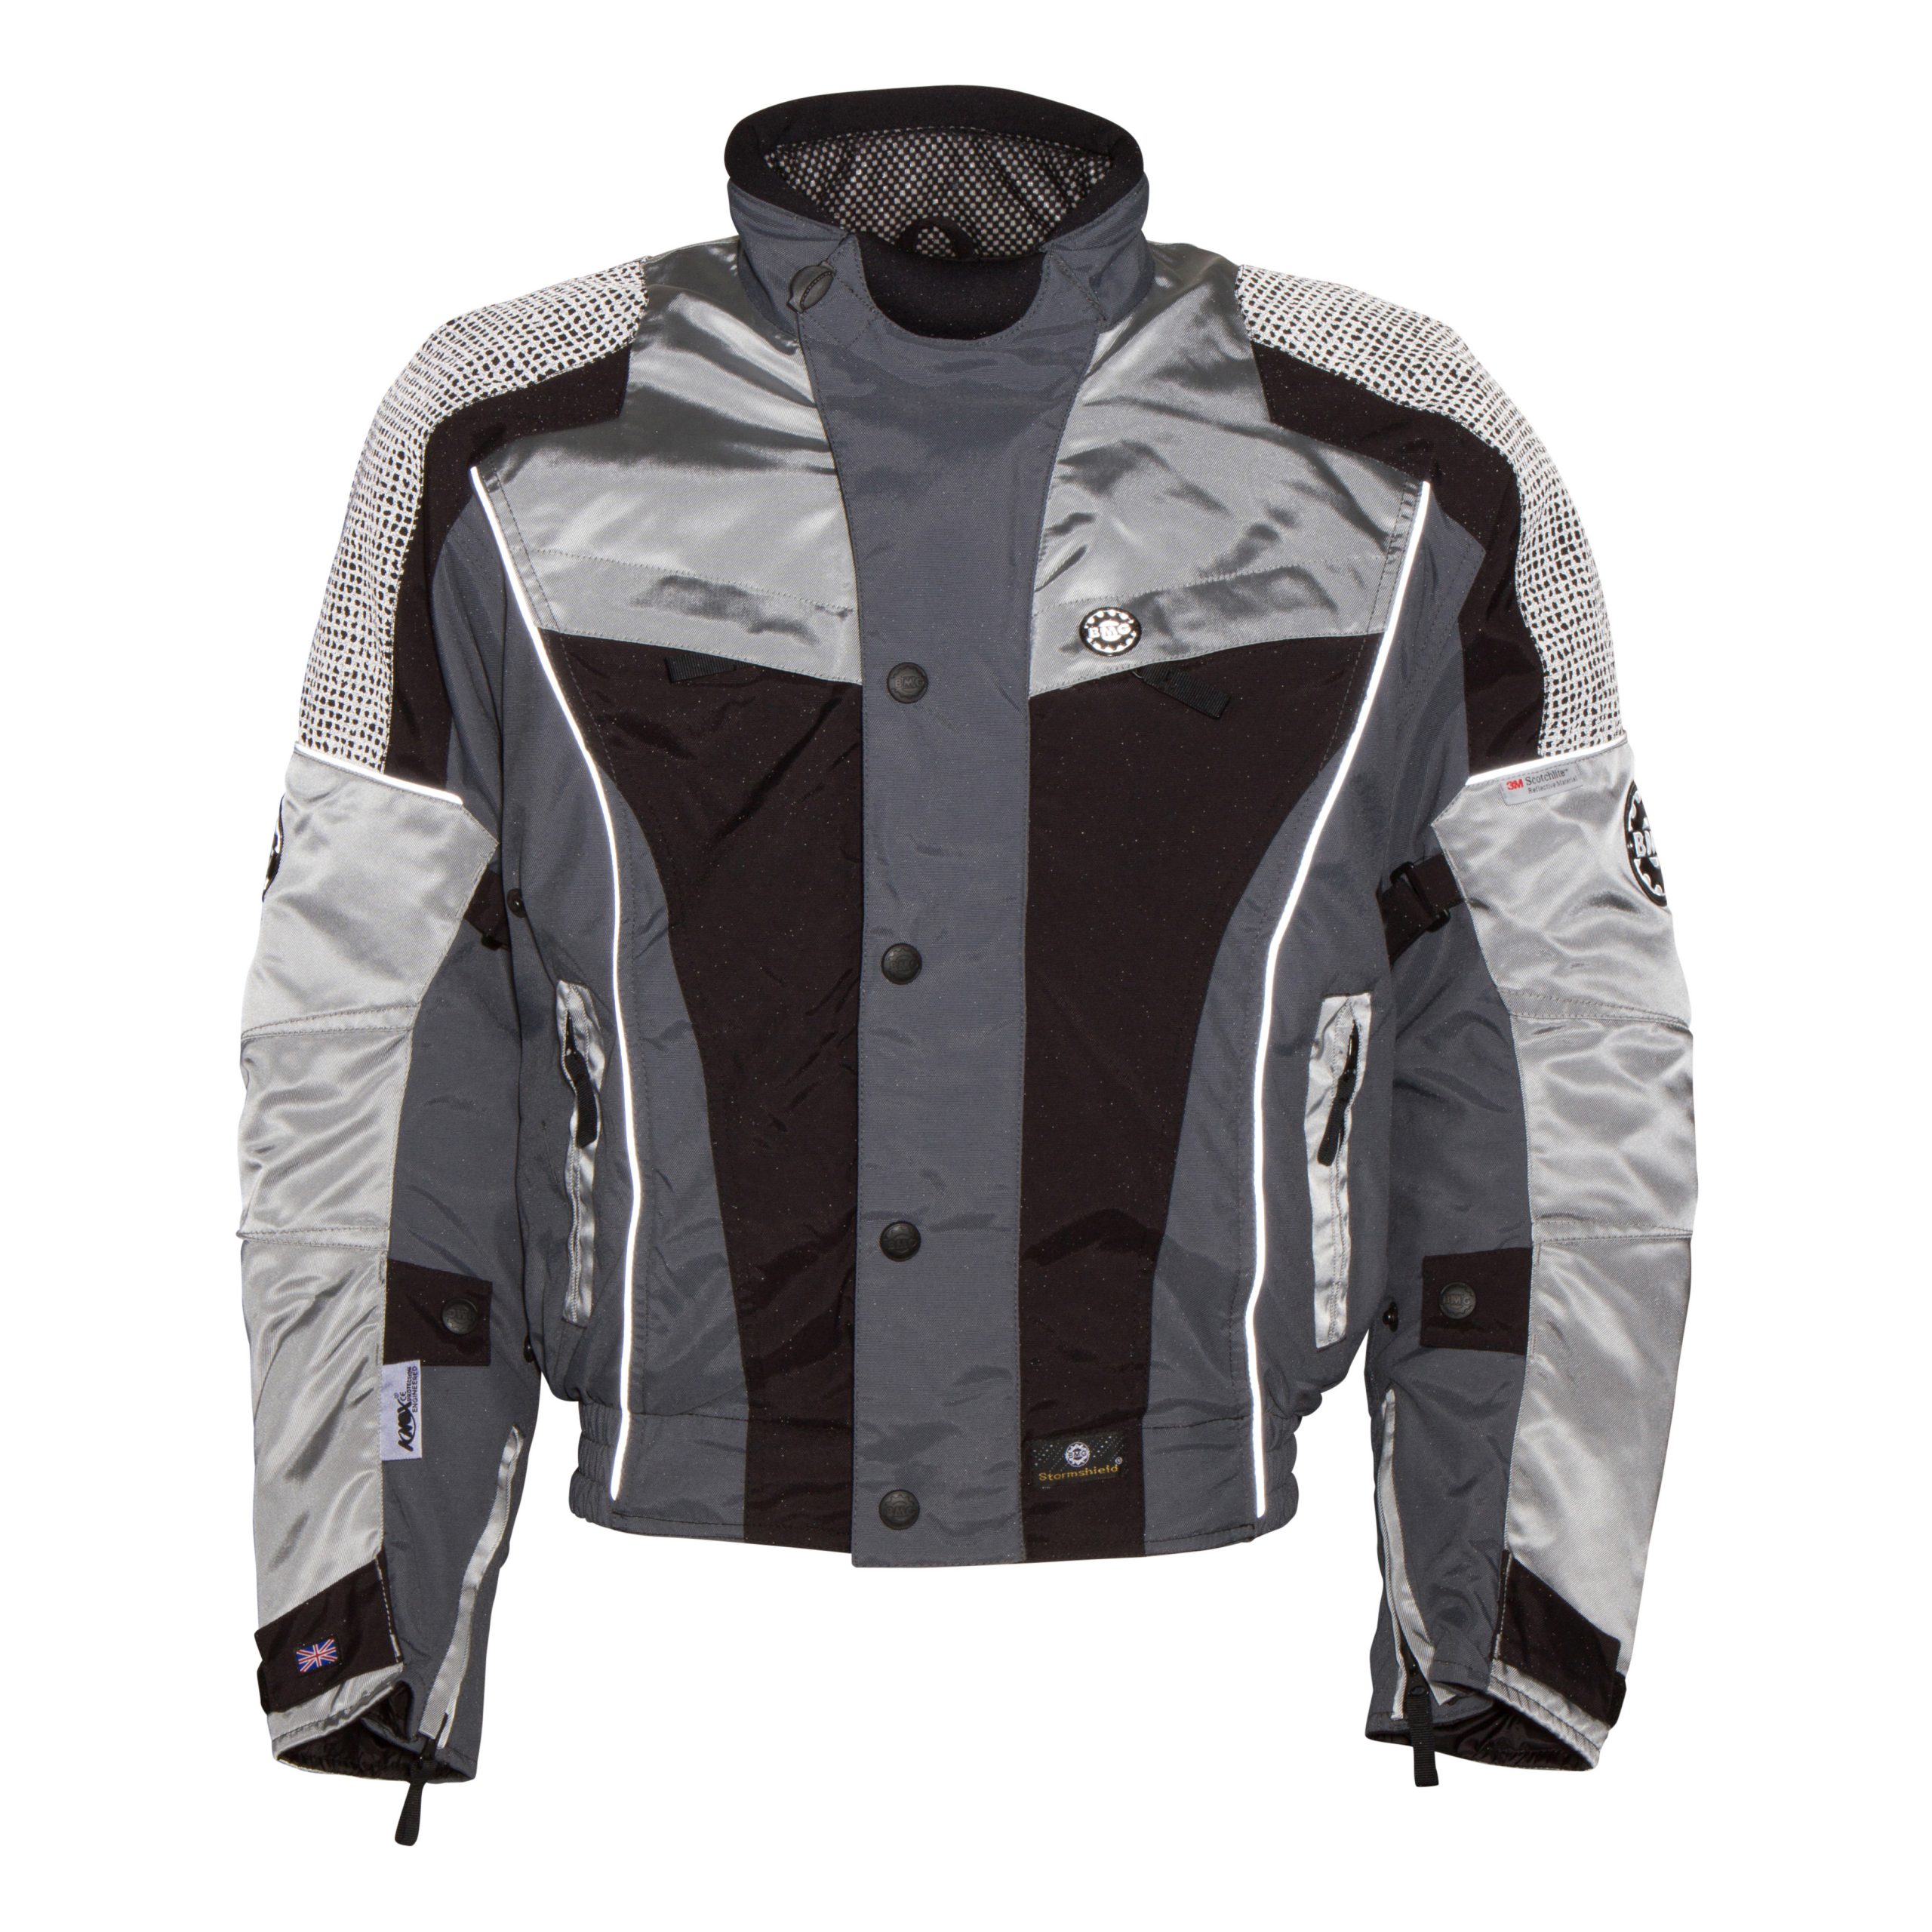 HiVis Waterproof Motorcycle Jacket